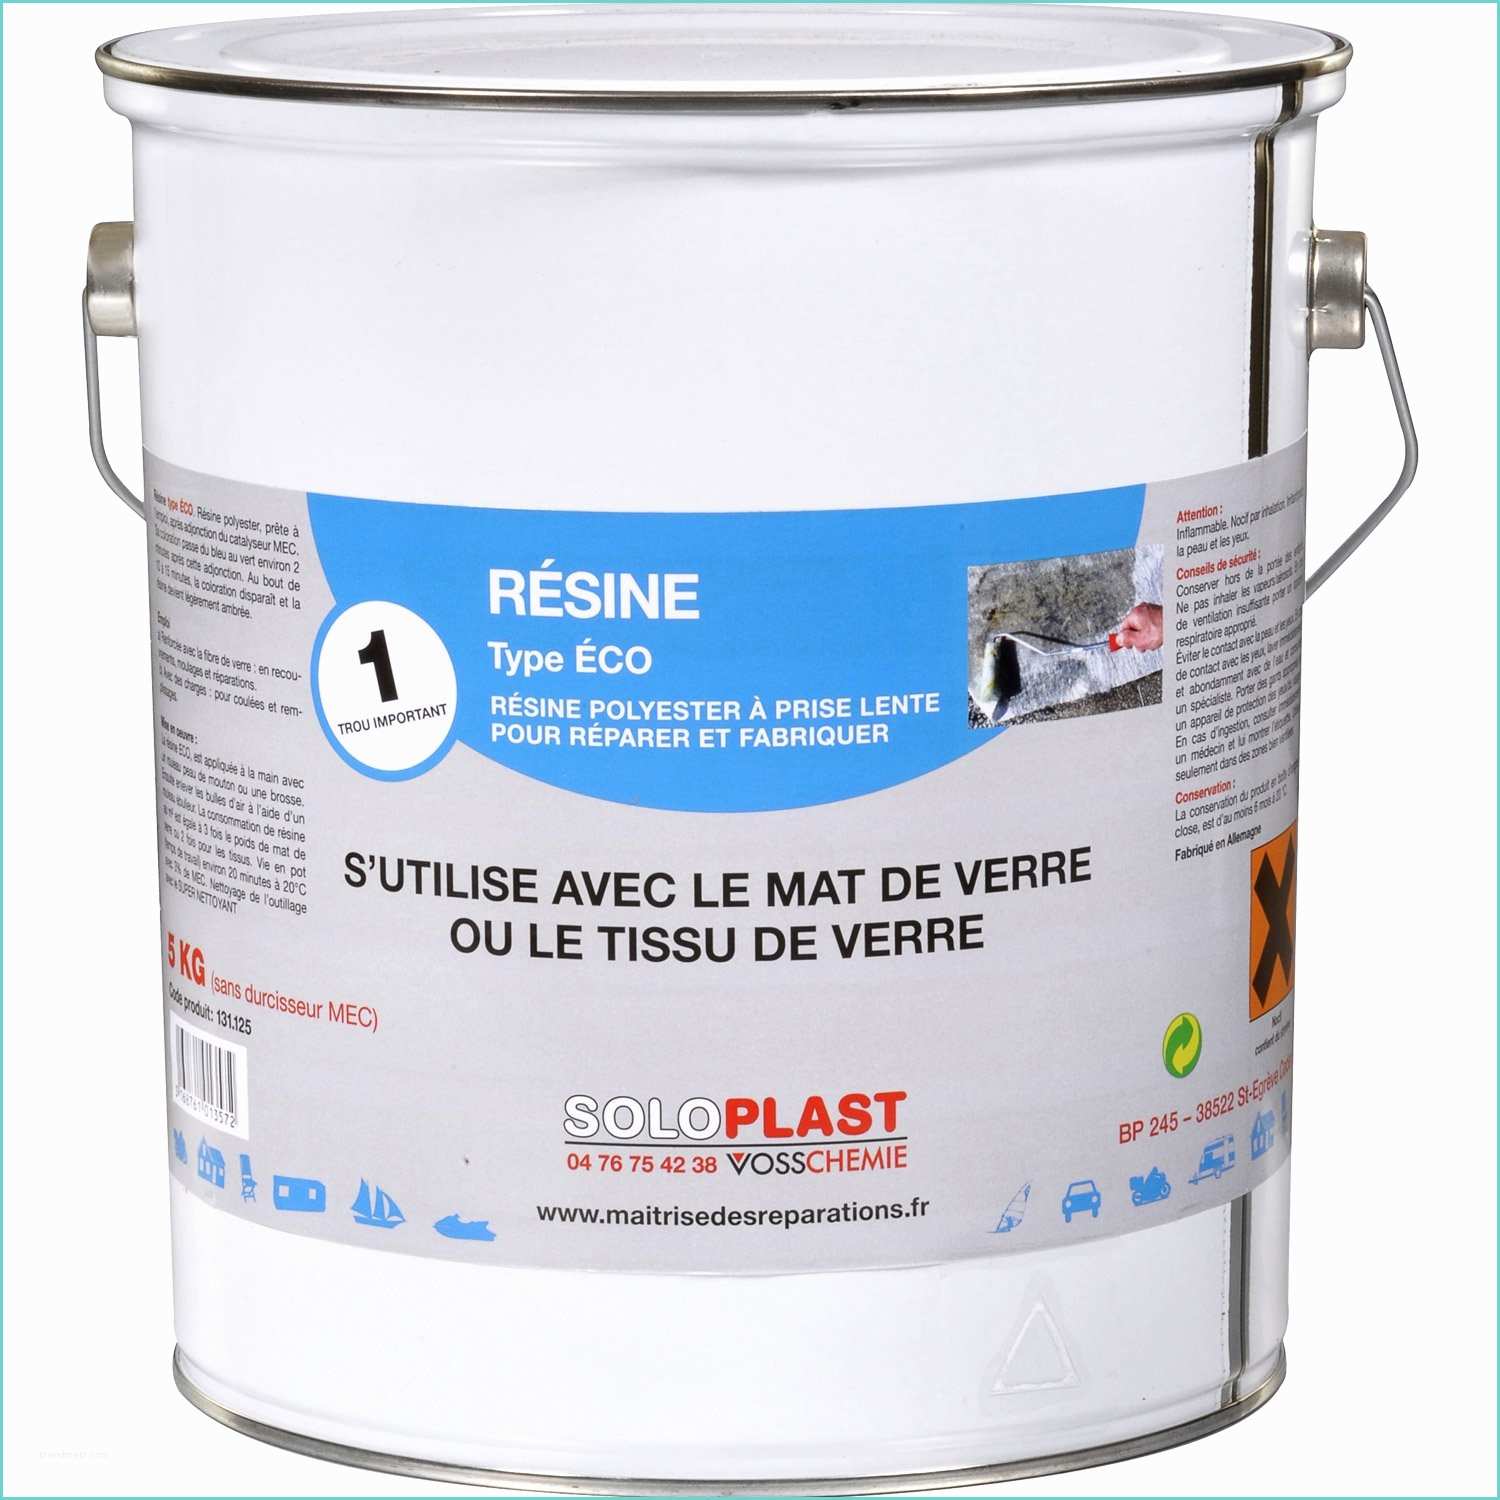 Caillebotis Resine Leroy Merlin Résine Eco soloplast 5kg